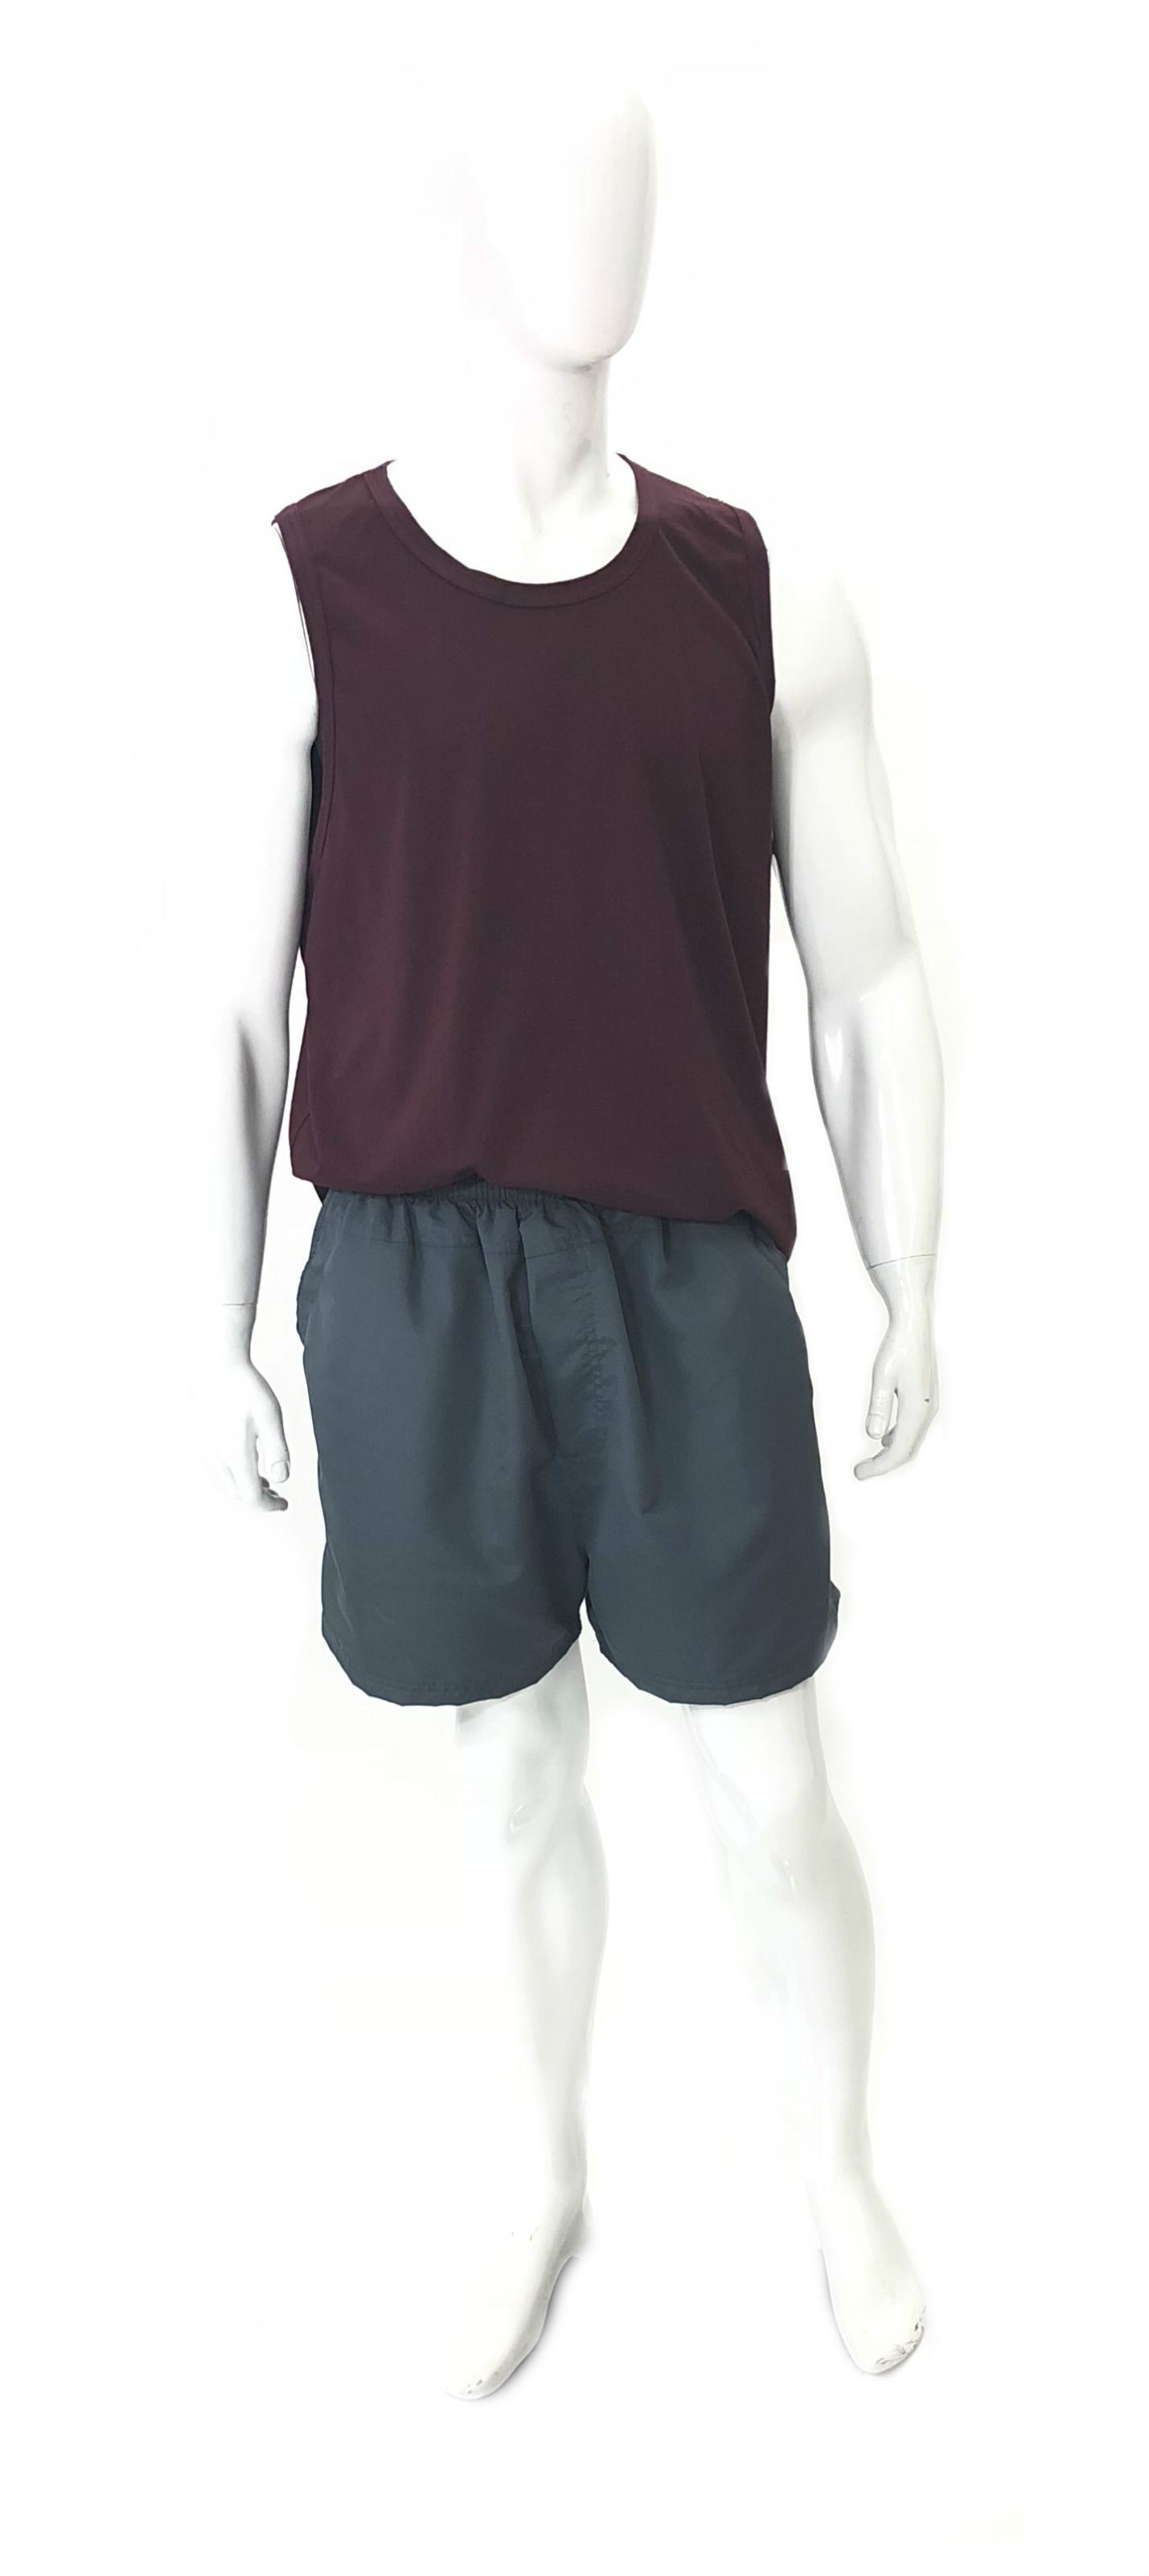 Shorts Plus Size de TacTel Ref 01179